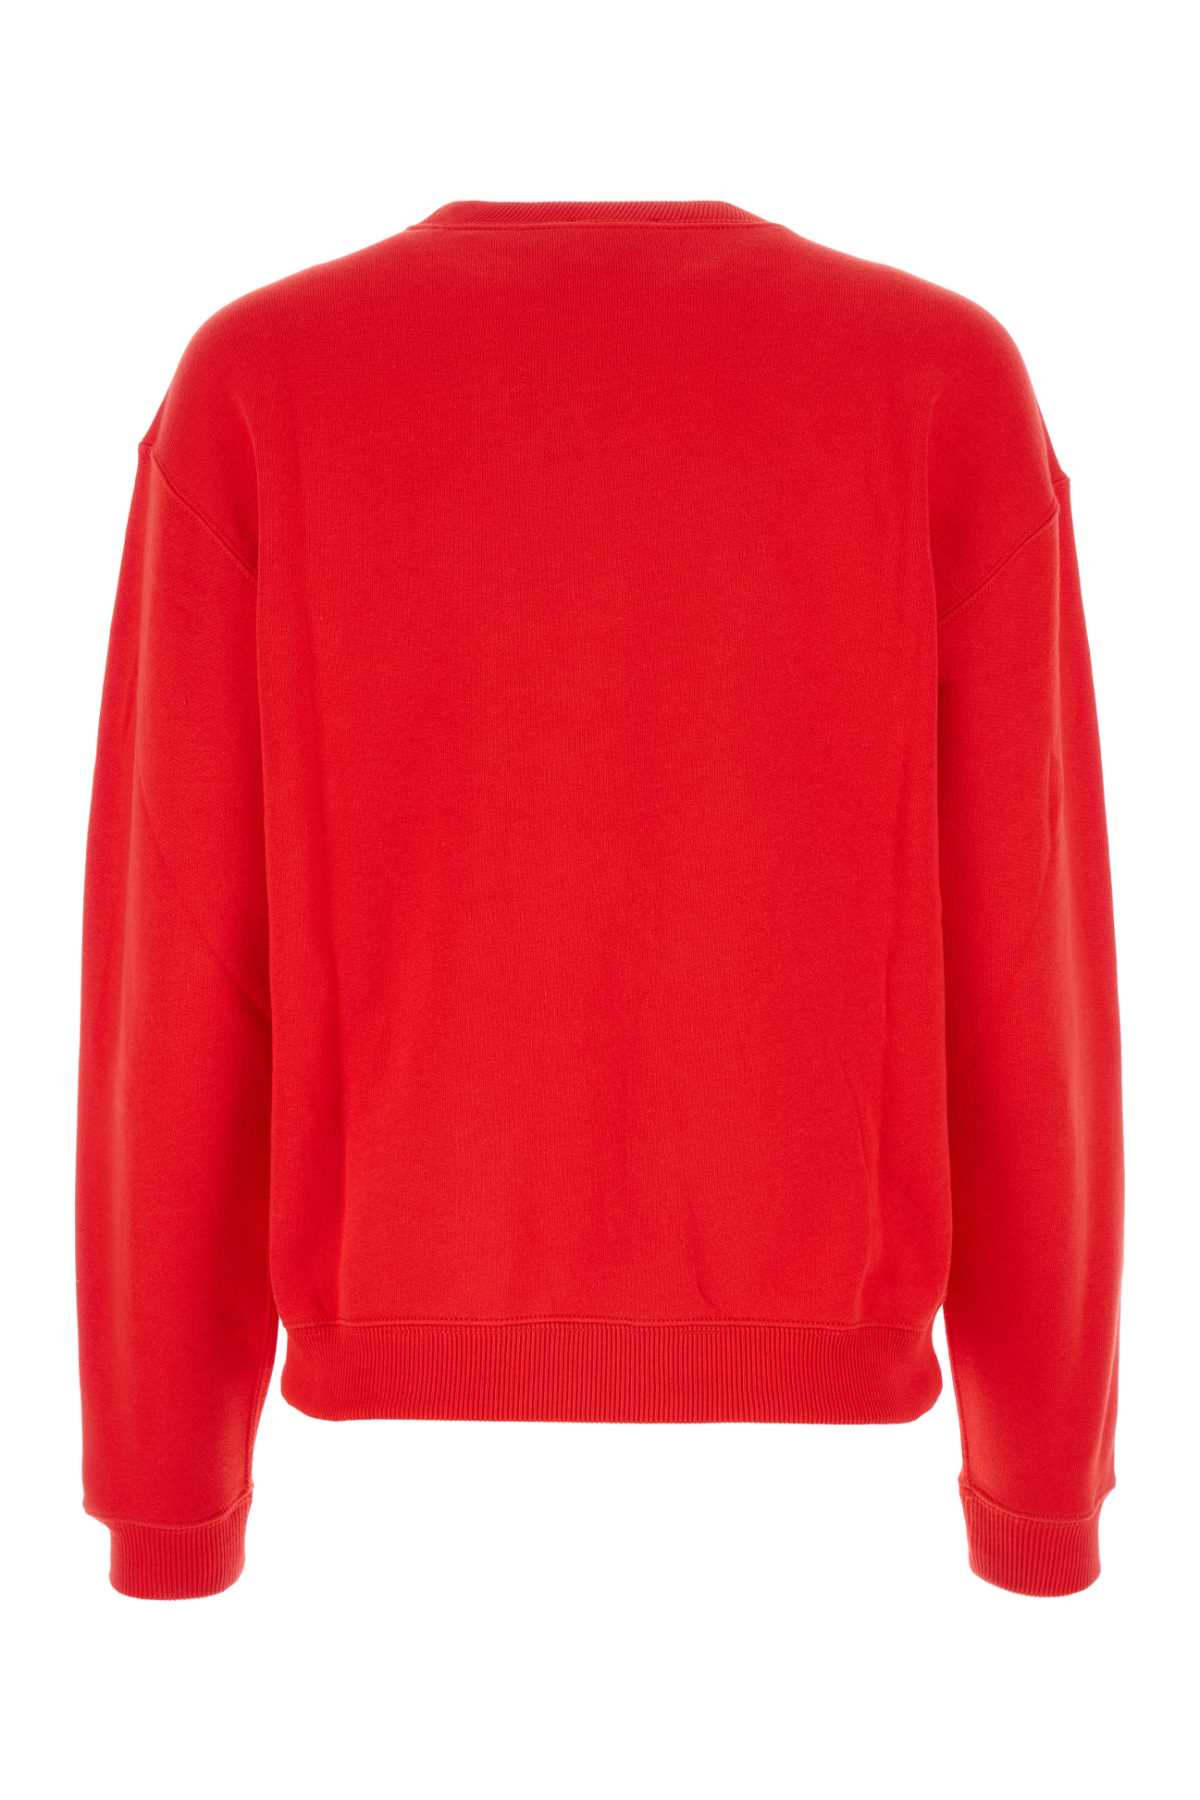 Polo Ralph Lauren Red Cotton Blend Sweatshirt In Brighthibiscus